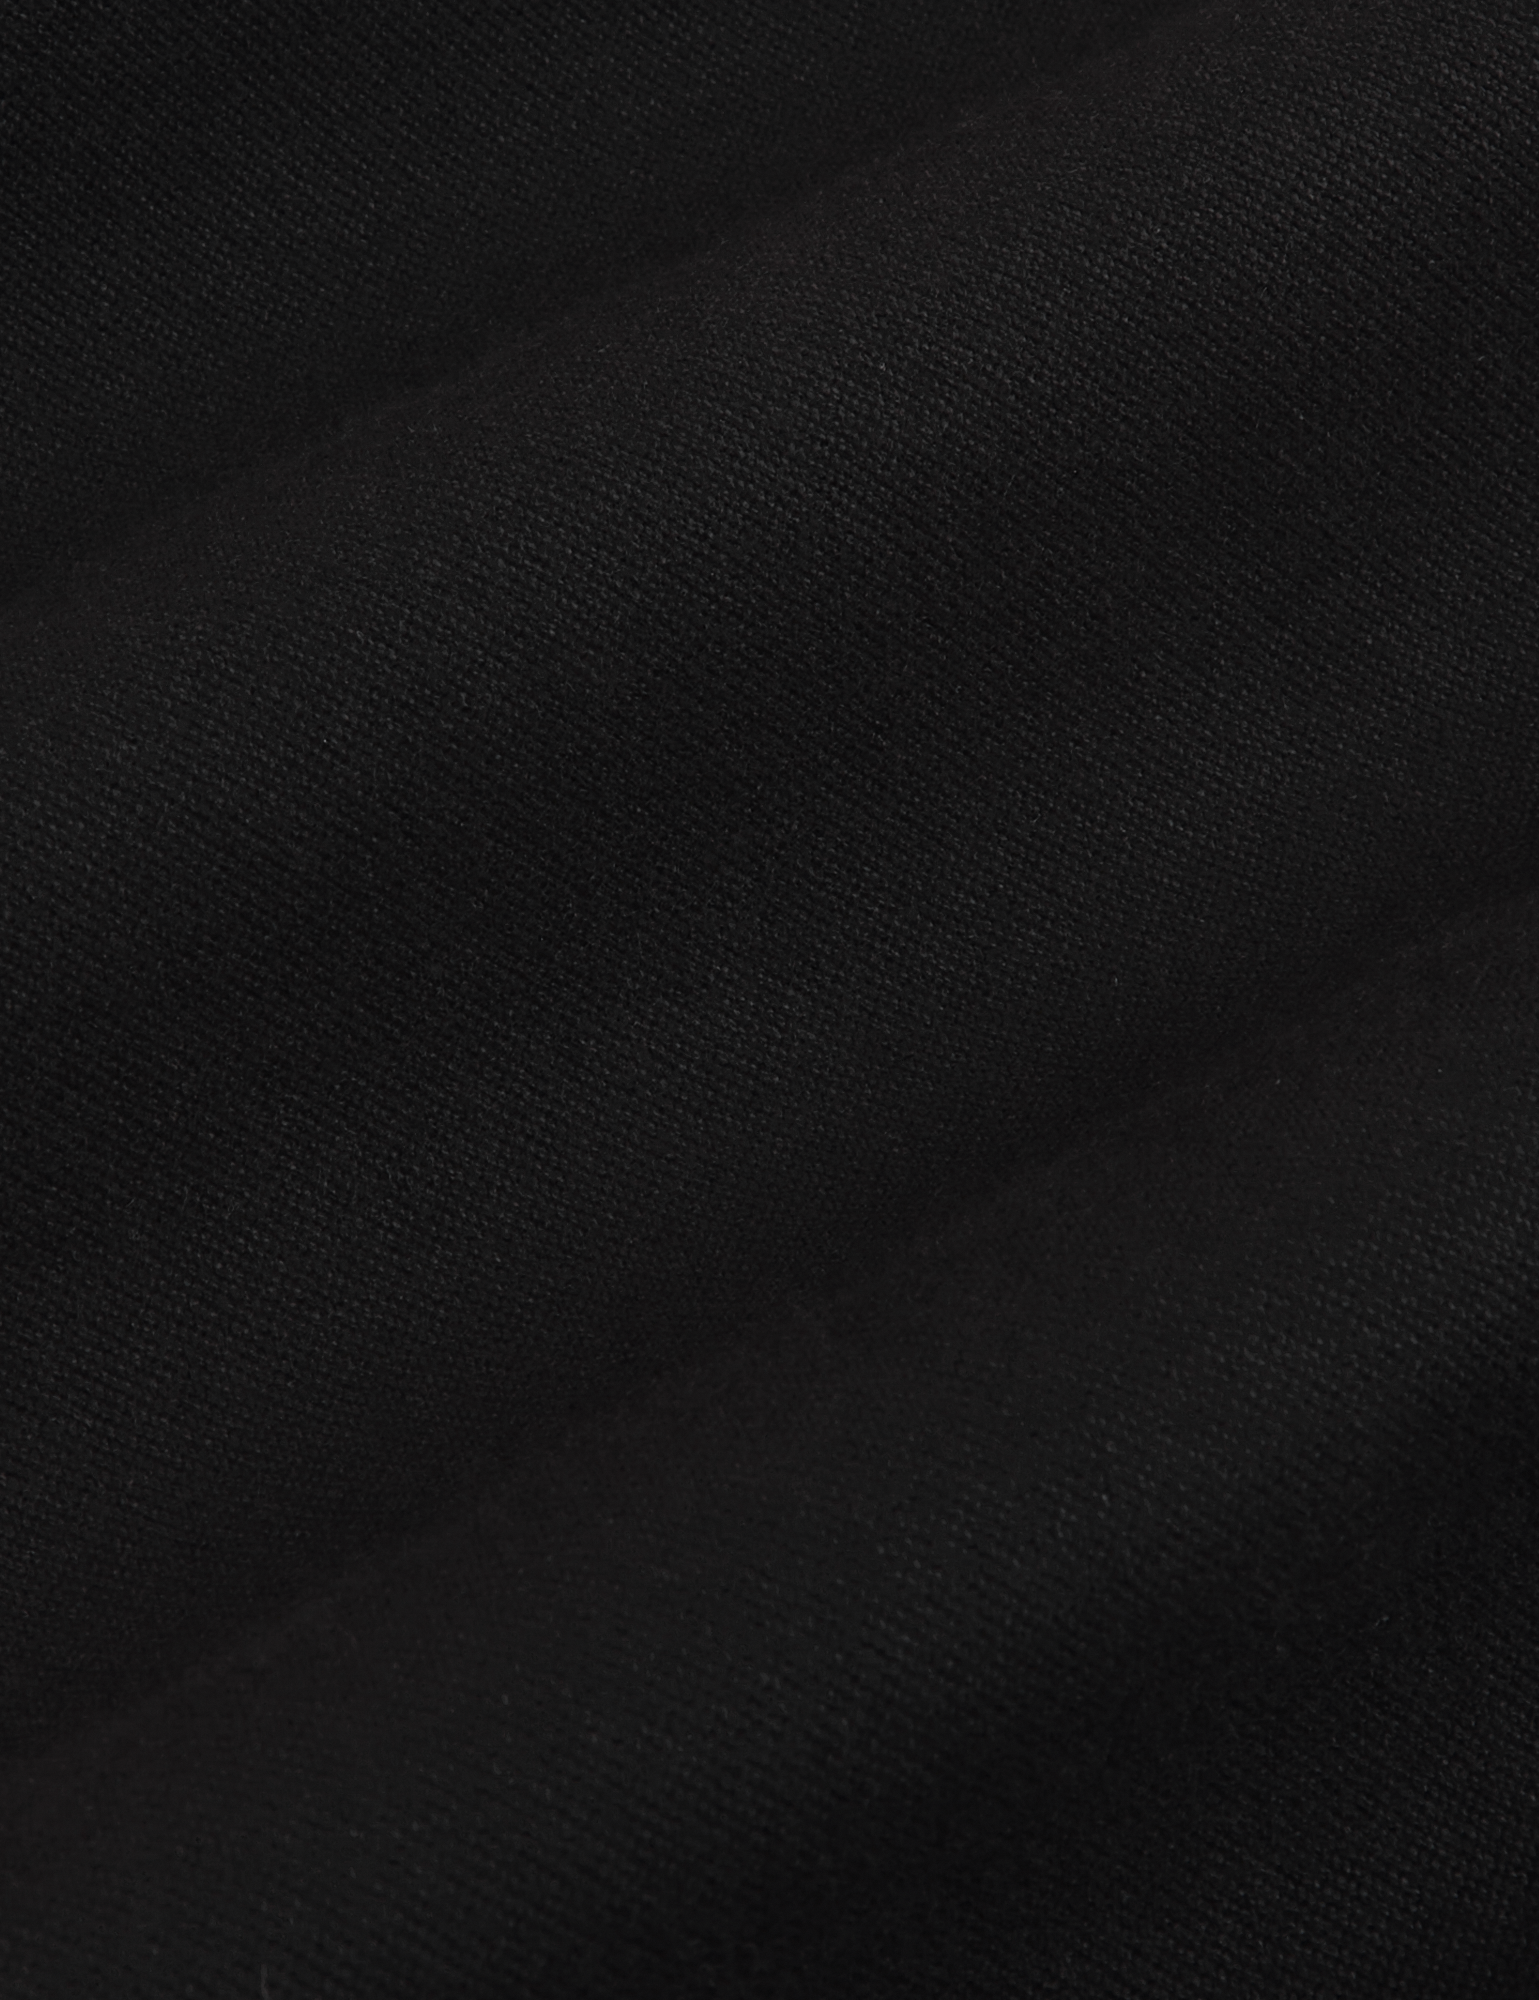 Organic Work Pants in Basic Black fabric detail